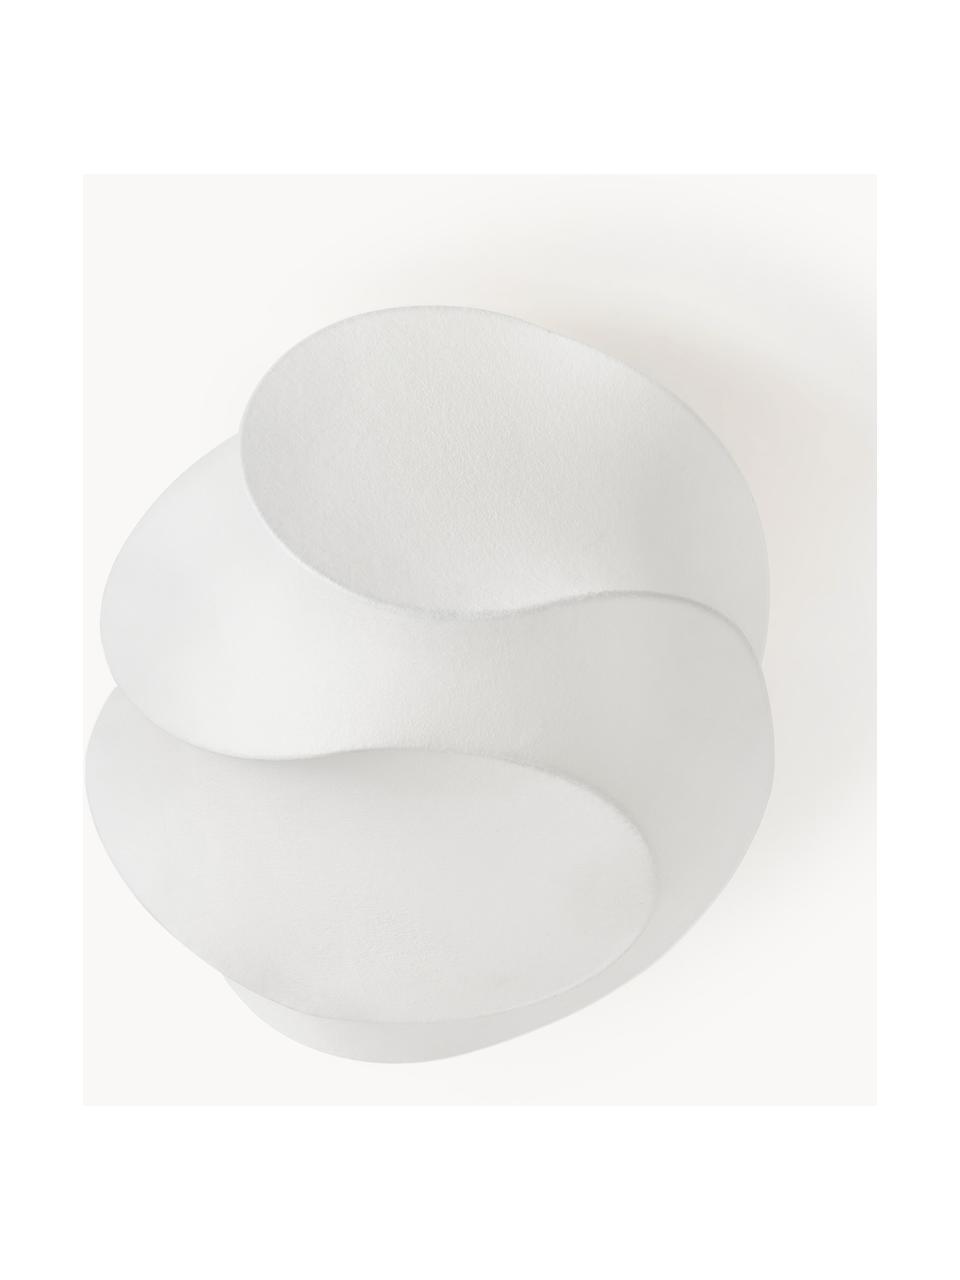 Lampa sufitowa Pearl, Biały, matowy, S 50 x W 30 cm